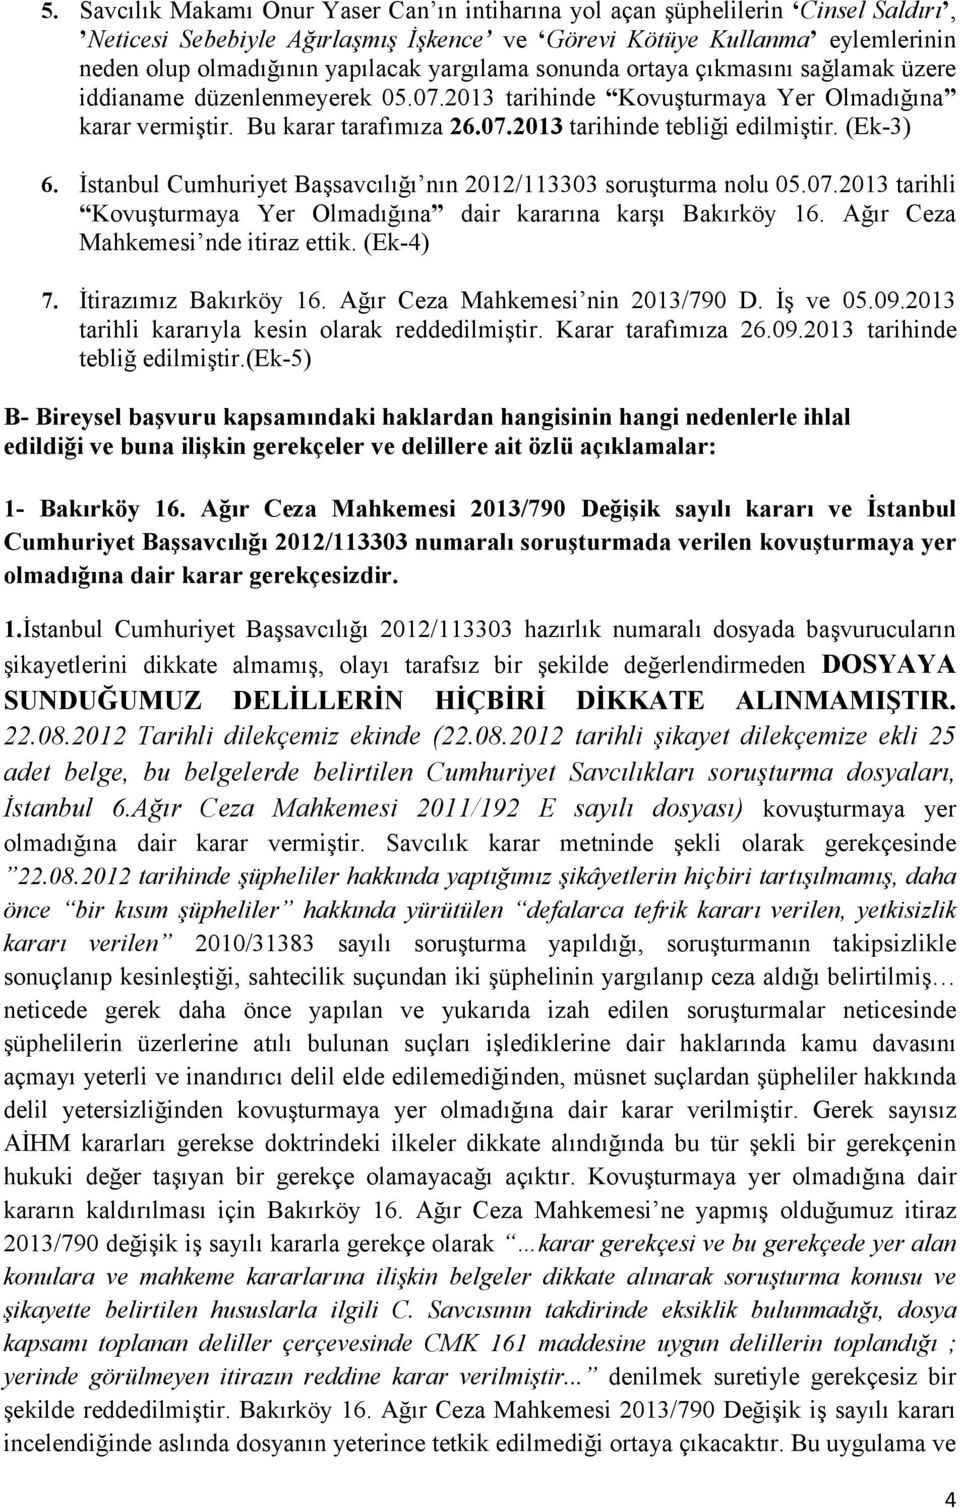 (Ek-3) 6. İstanbul Cumhuriyet Başsavcılığı nın 2012/113303 soruşturma nolu 05.07.2013 tarihli Kovuşturmaya Yer Olmadığına dair kararına karşı Bakırköy 16. Ağır Ceza Mahkemesi nde itiraz ettik.